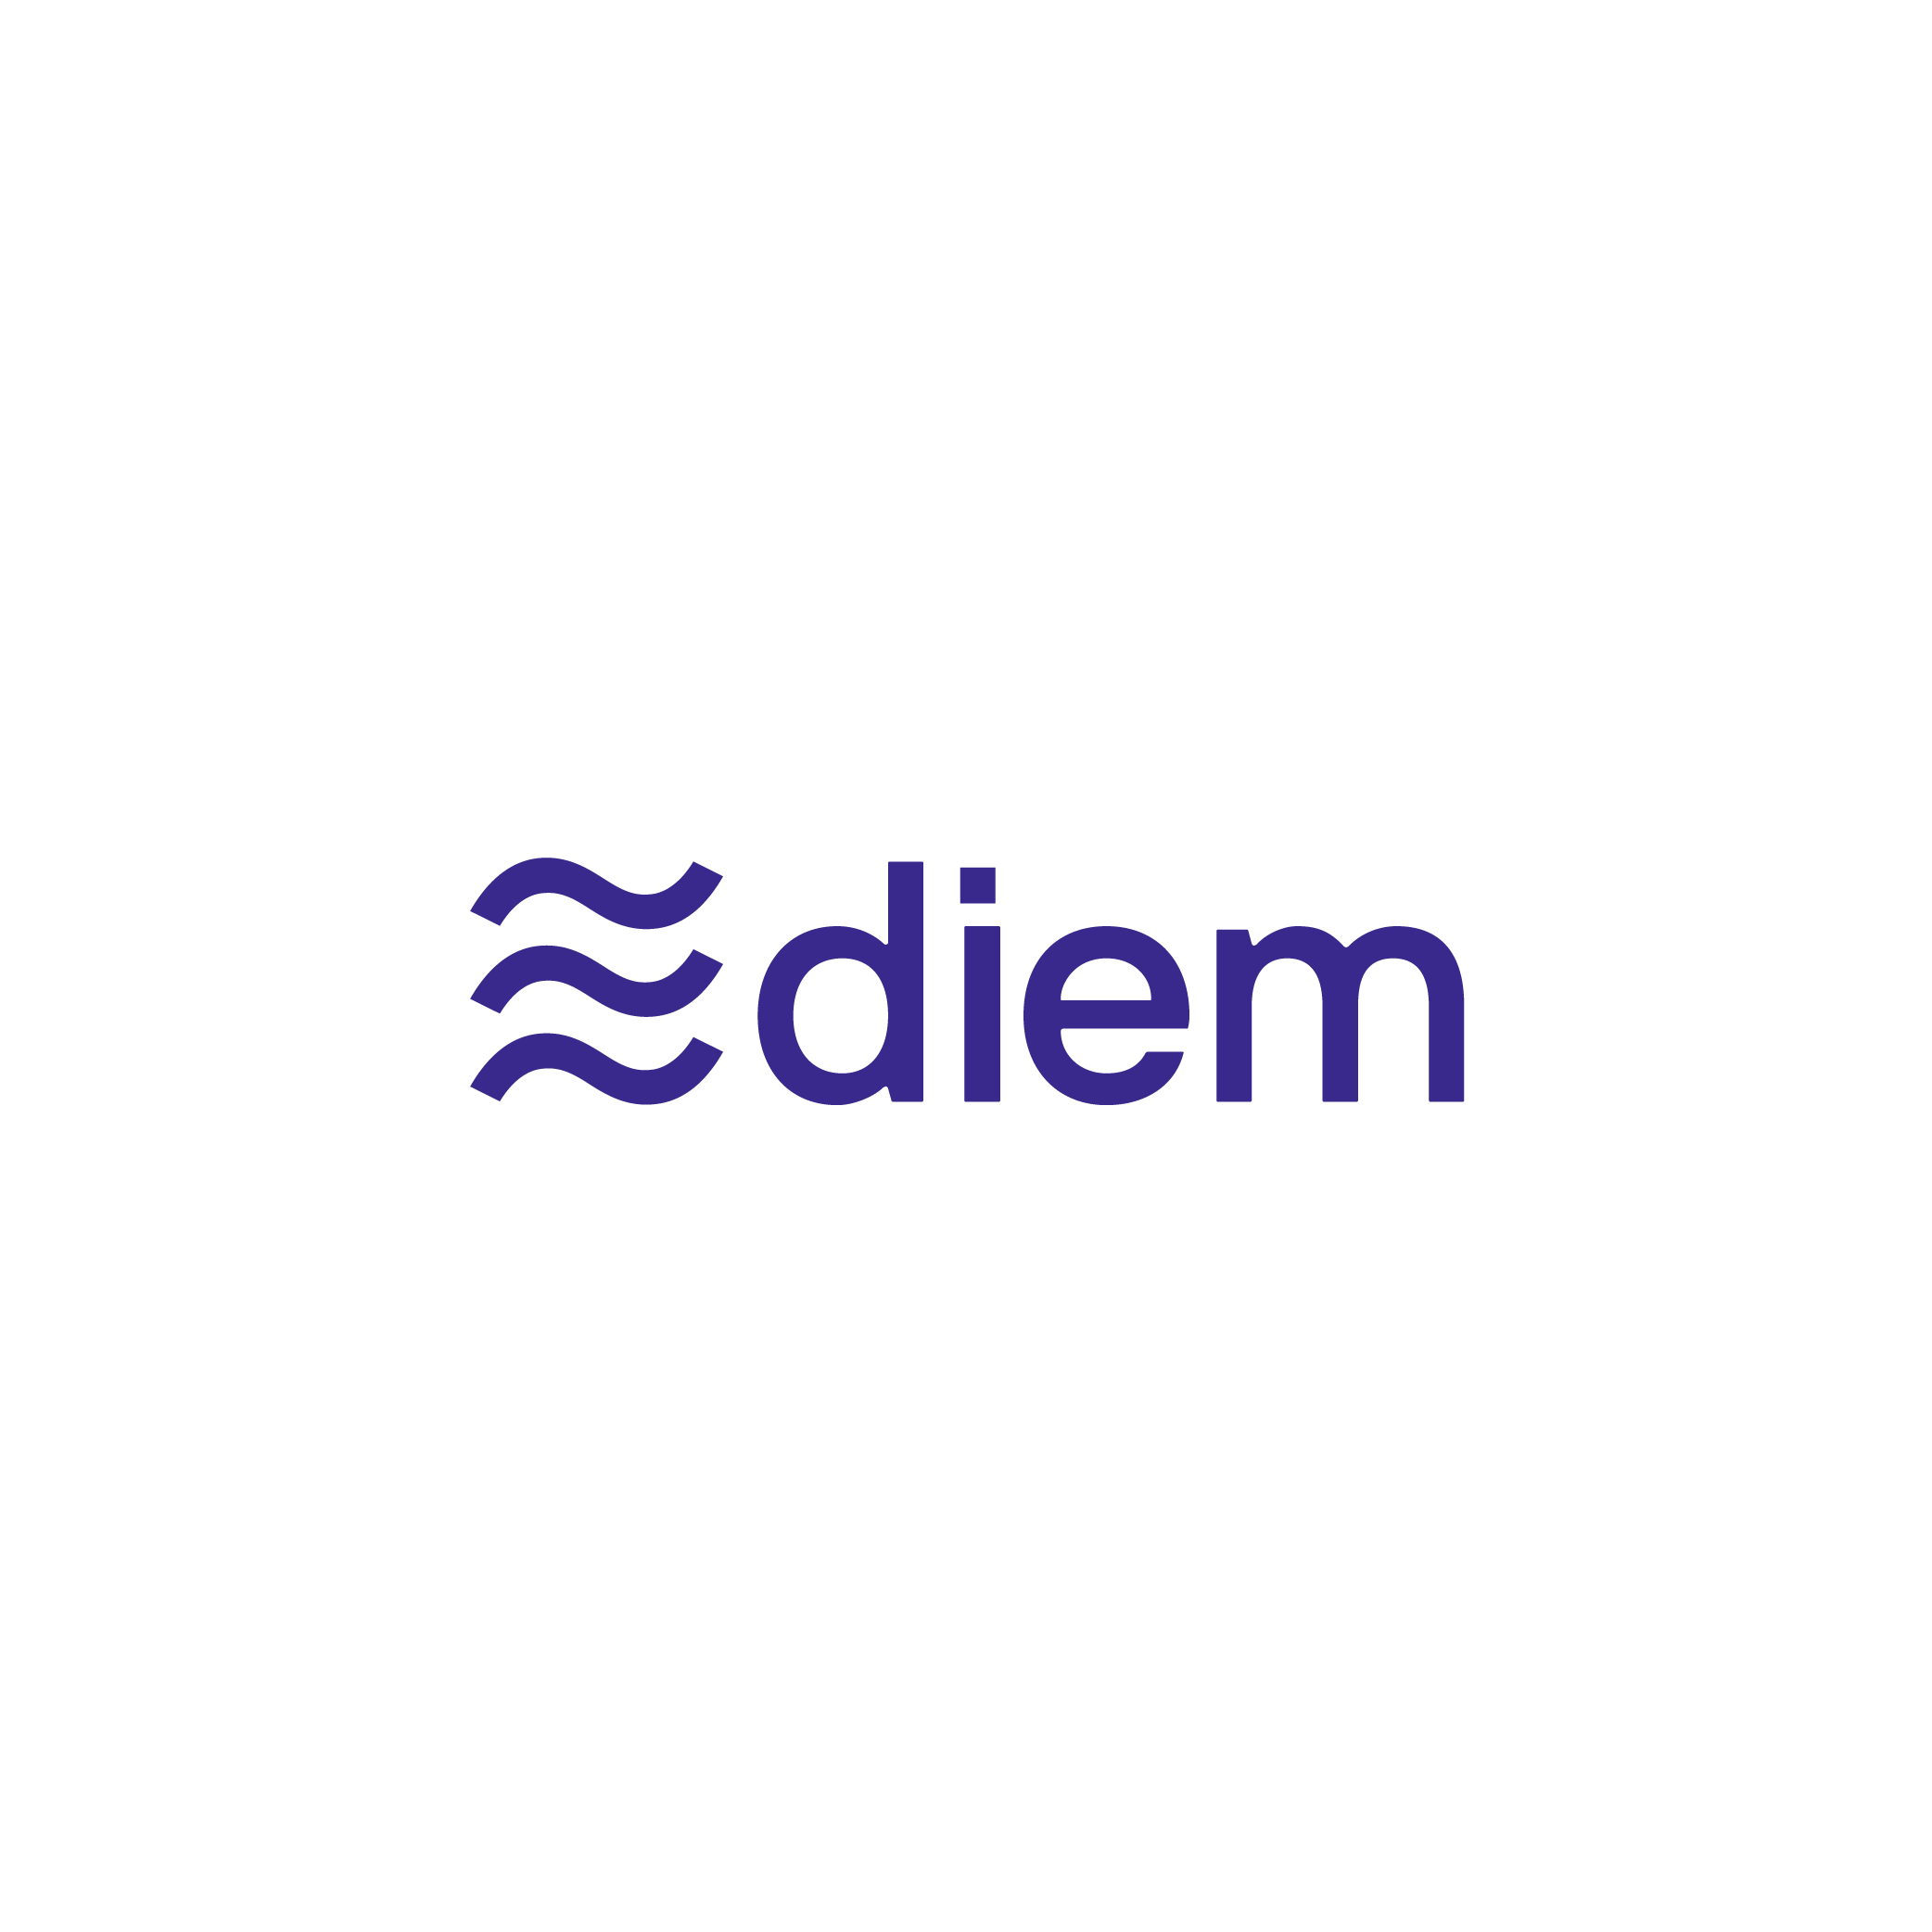 Dự án tiền số Libra của Facebook đổi tên thành "Diem", dọn đường phát hành stablecoin vào tháng 1 năm sau